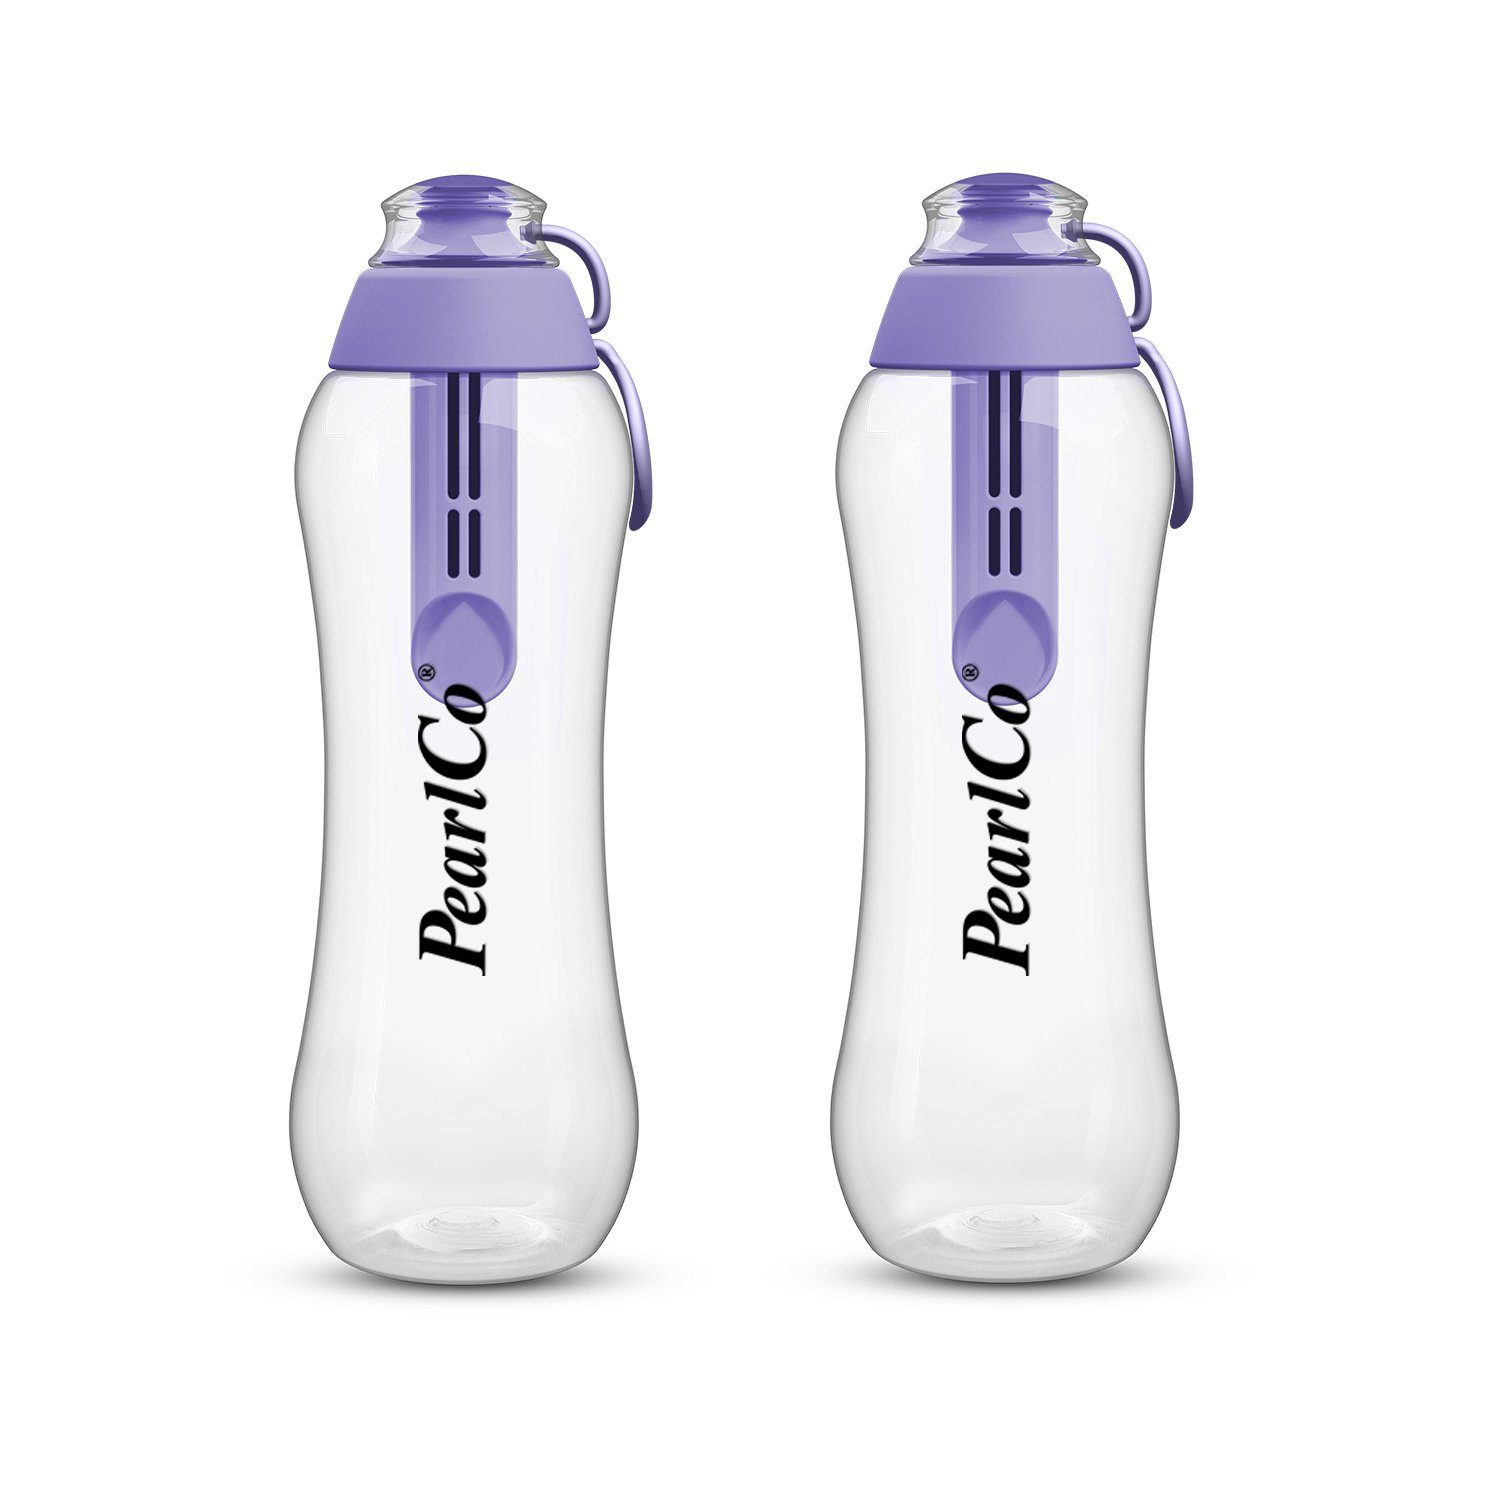 Liter Trinkflaschen Filter 0,5 Zwei PearlCo lila mit Trinkflasche